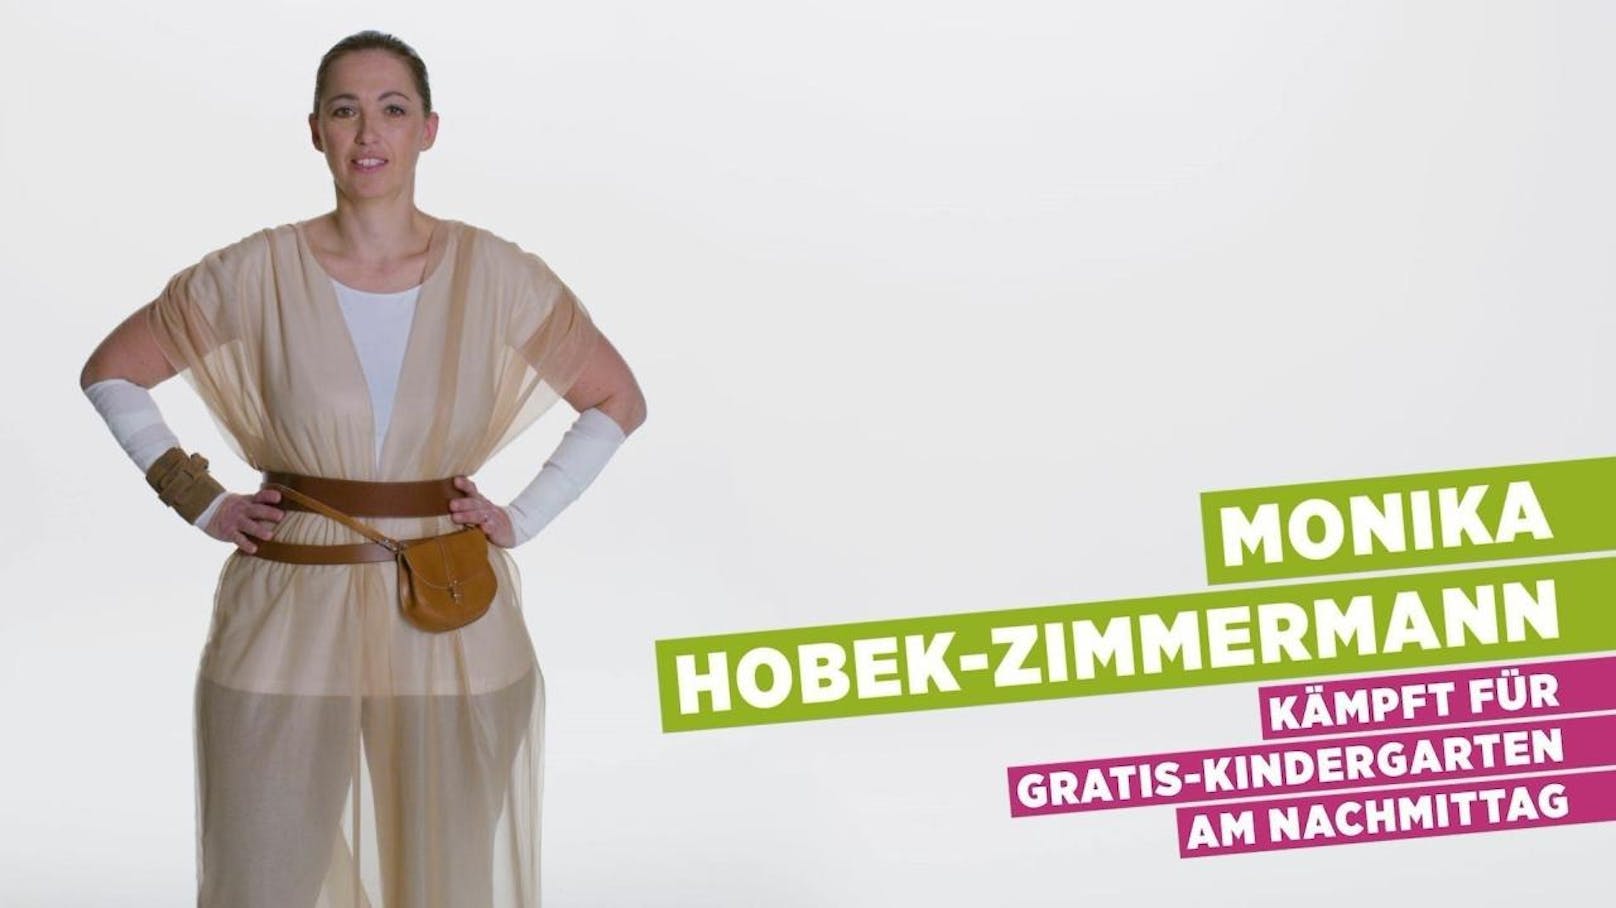 Monika Hobek-Zimmermann